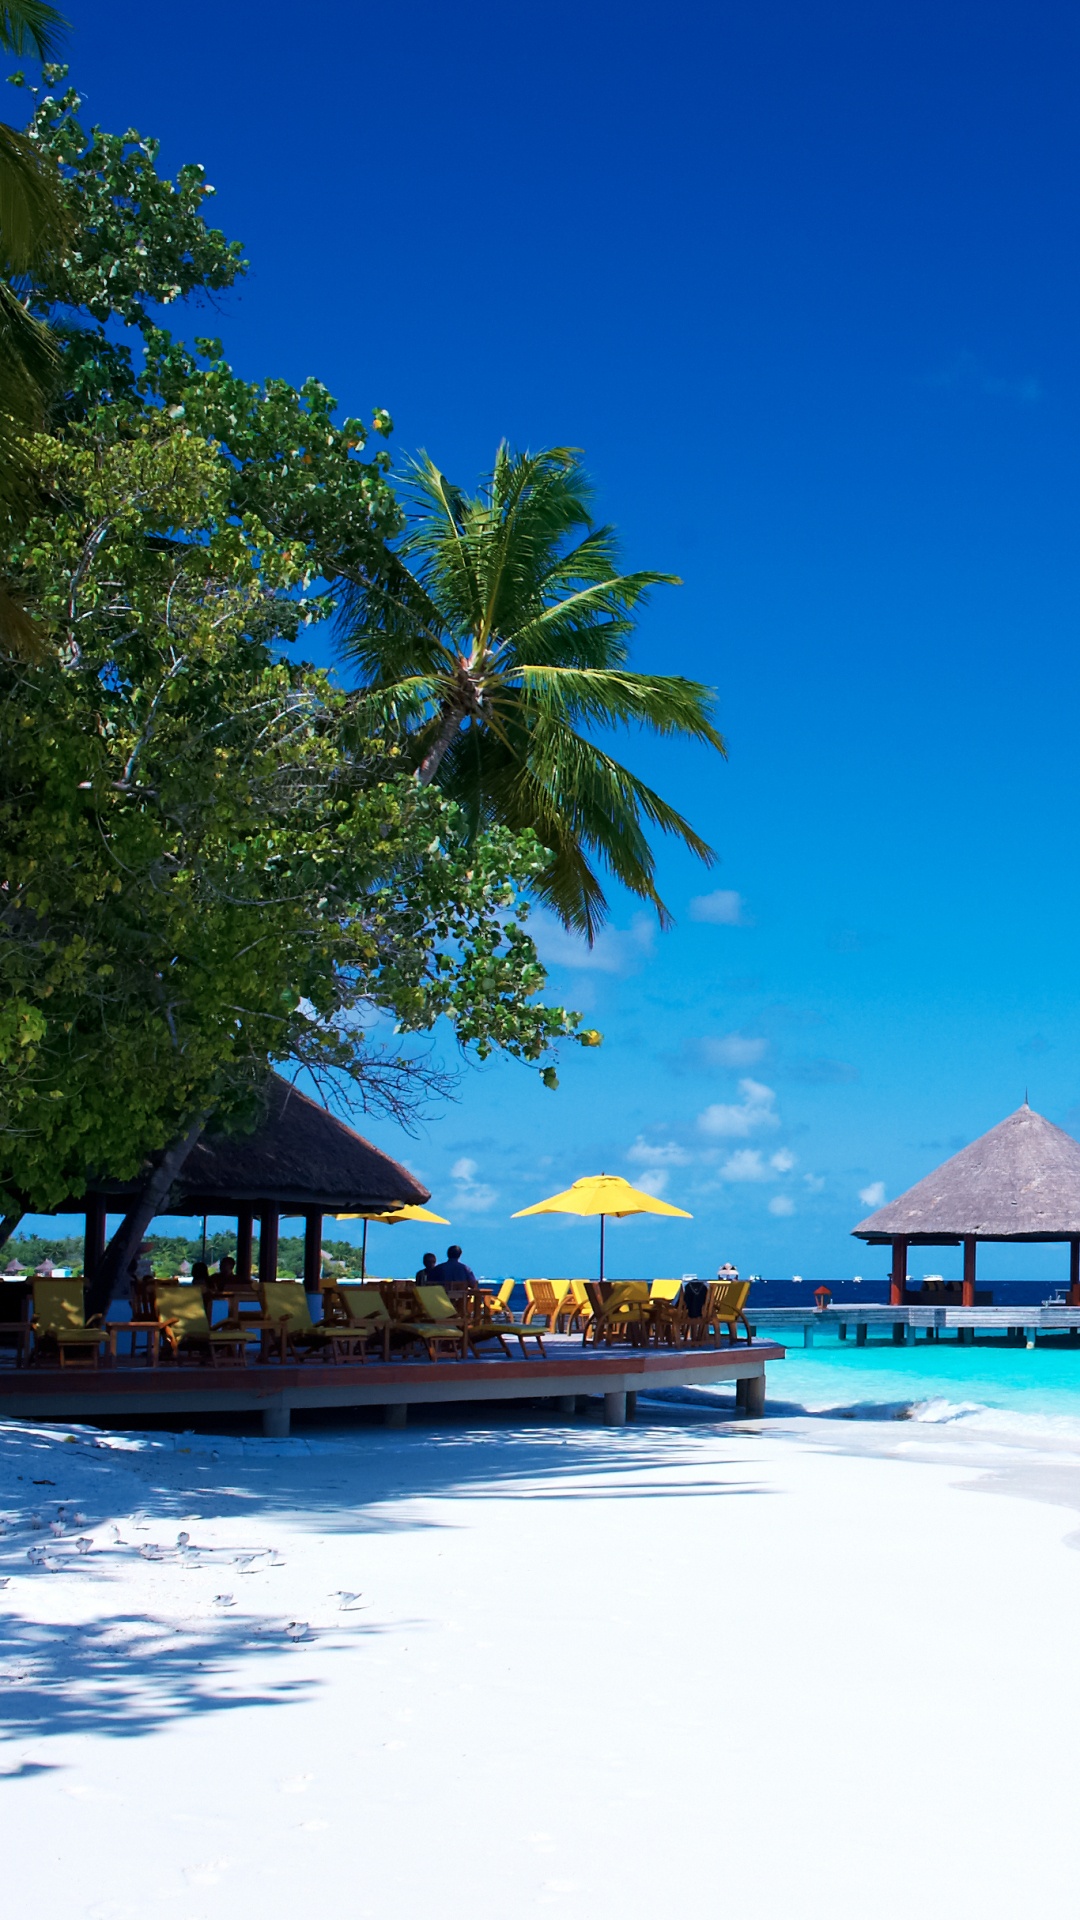 度假村, 度假小岛, 热带地区, 大海, 加勒比 壁纸 1080x1920 允许